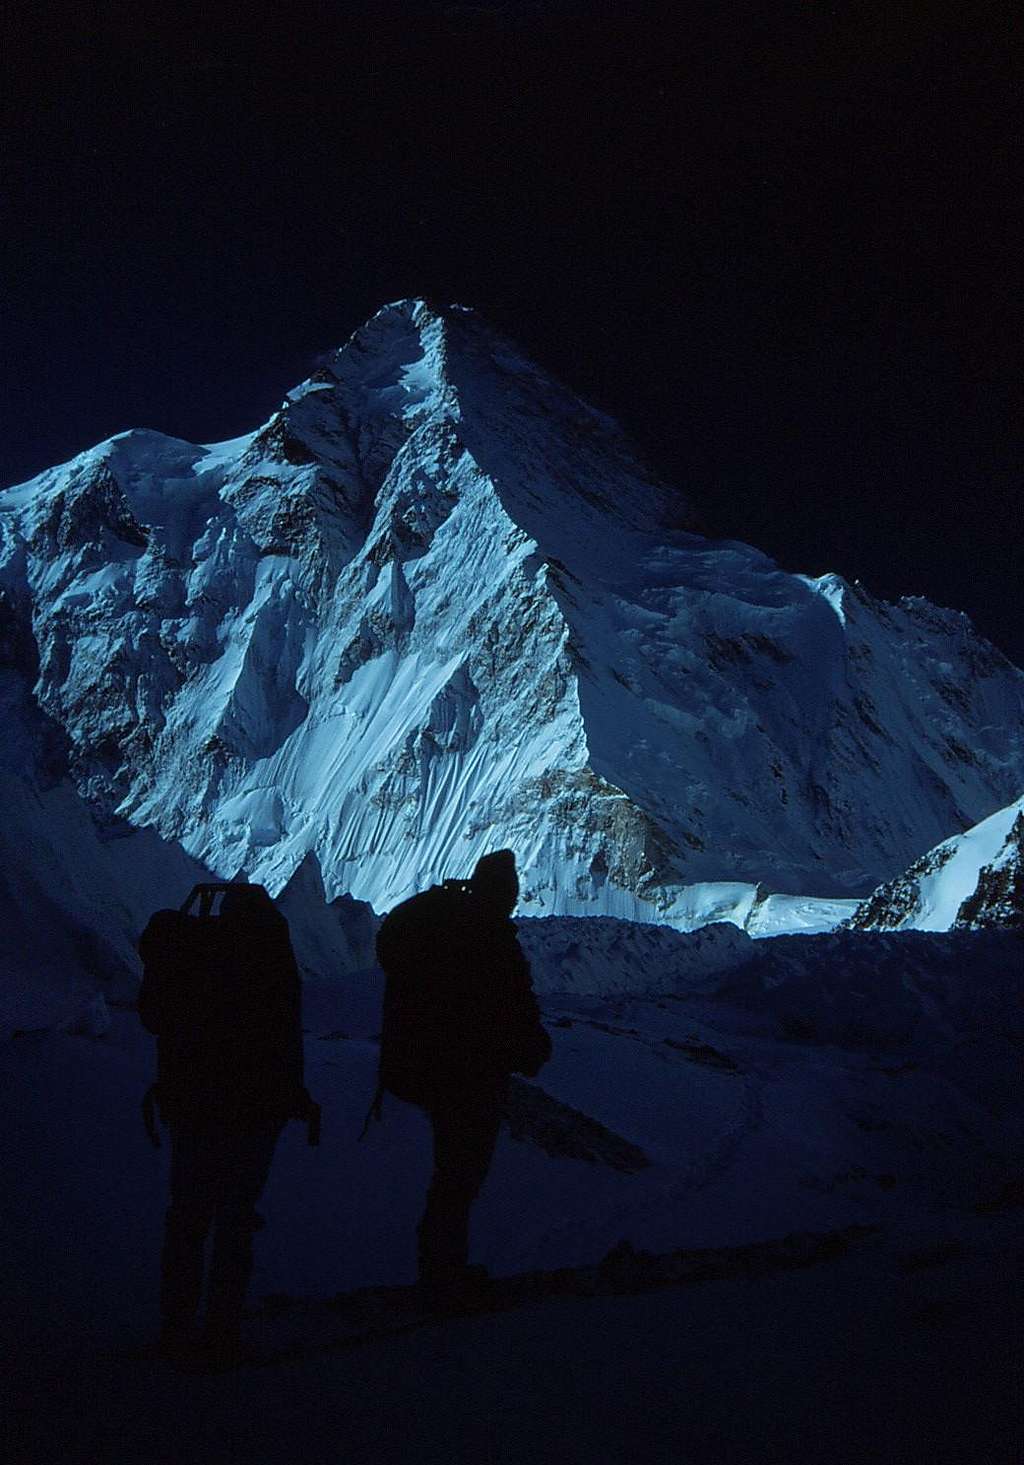 K2 North Ridge in Morning